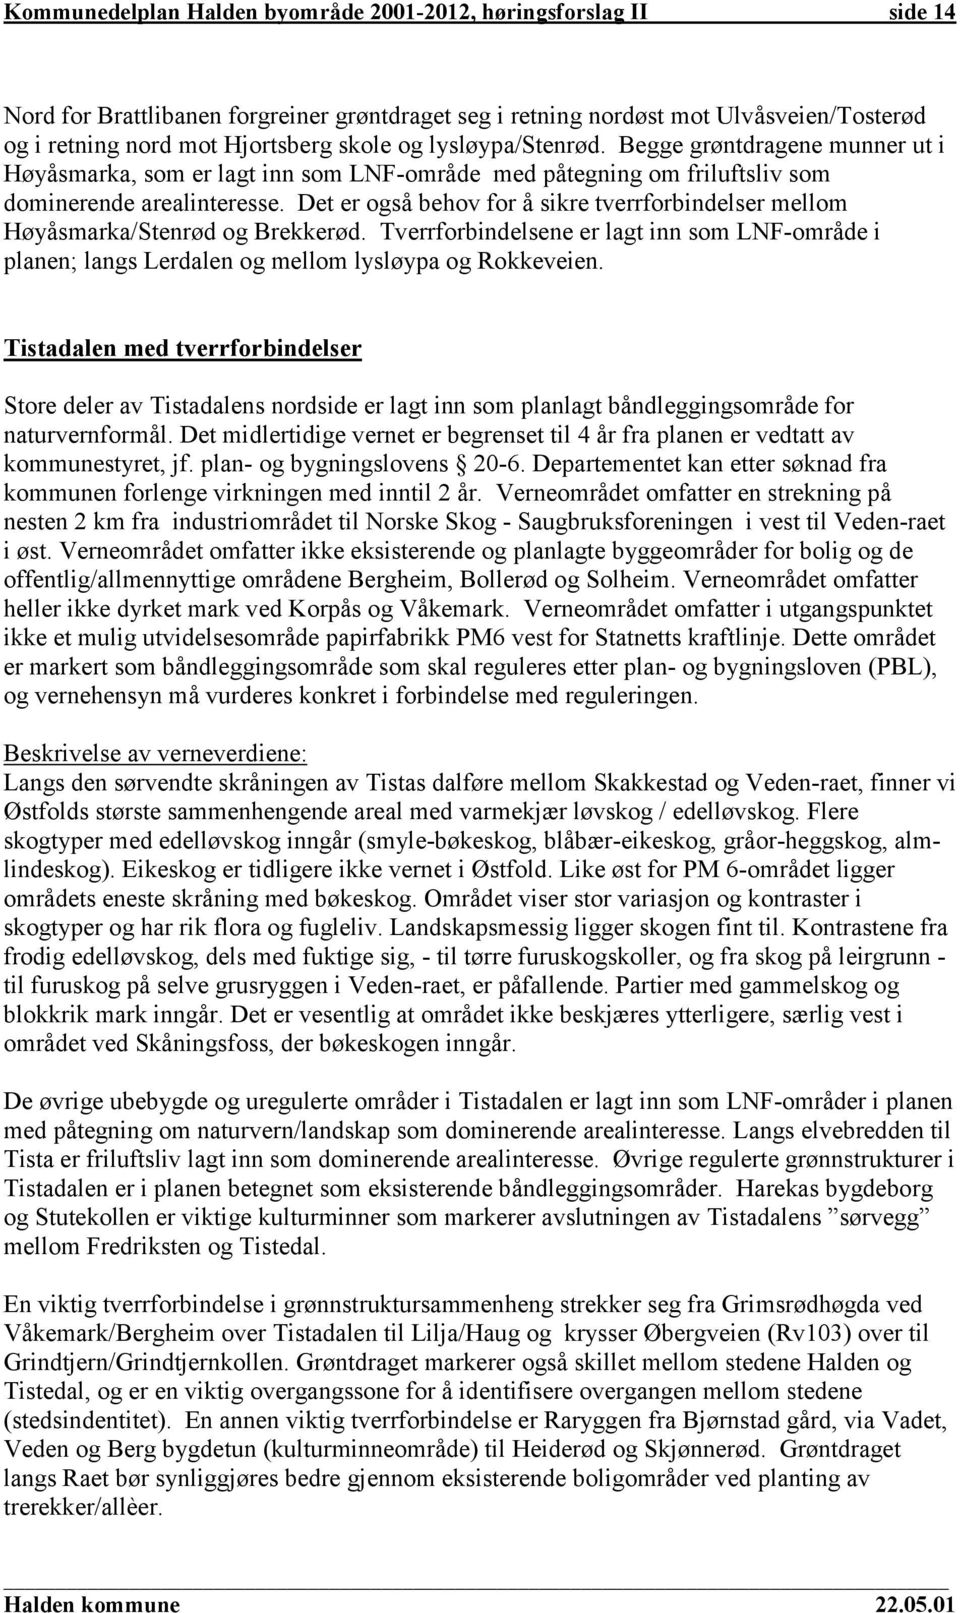 Det er også behov for å sikre tverrforbindelser mellom Høyåsmarka/Stenrød og Brekkerød. Tverrforbindelsene er lagt inn som LNF-område i planen; langs Lerdalen og mellom lysløypa og Rokkeveien.